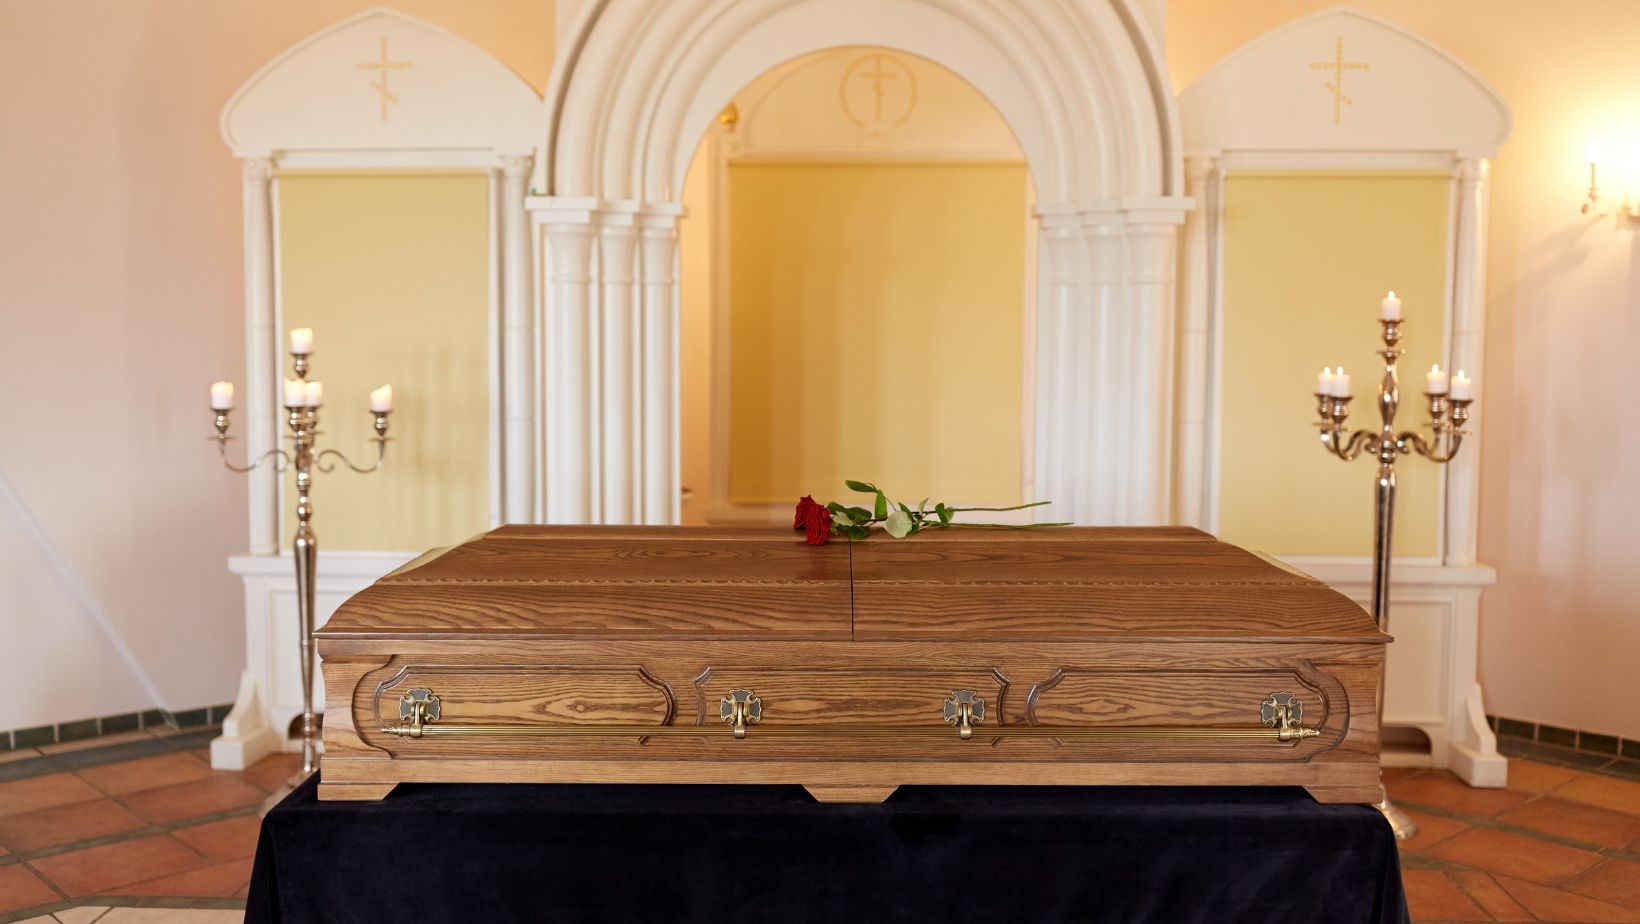 scott's chapel hill mortuary obituaries